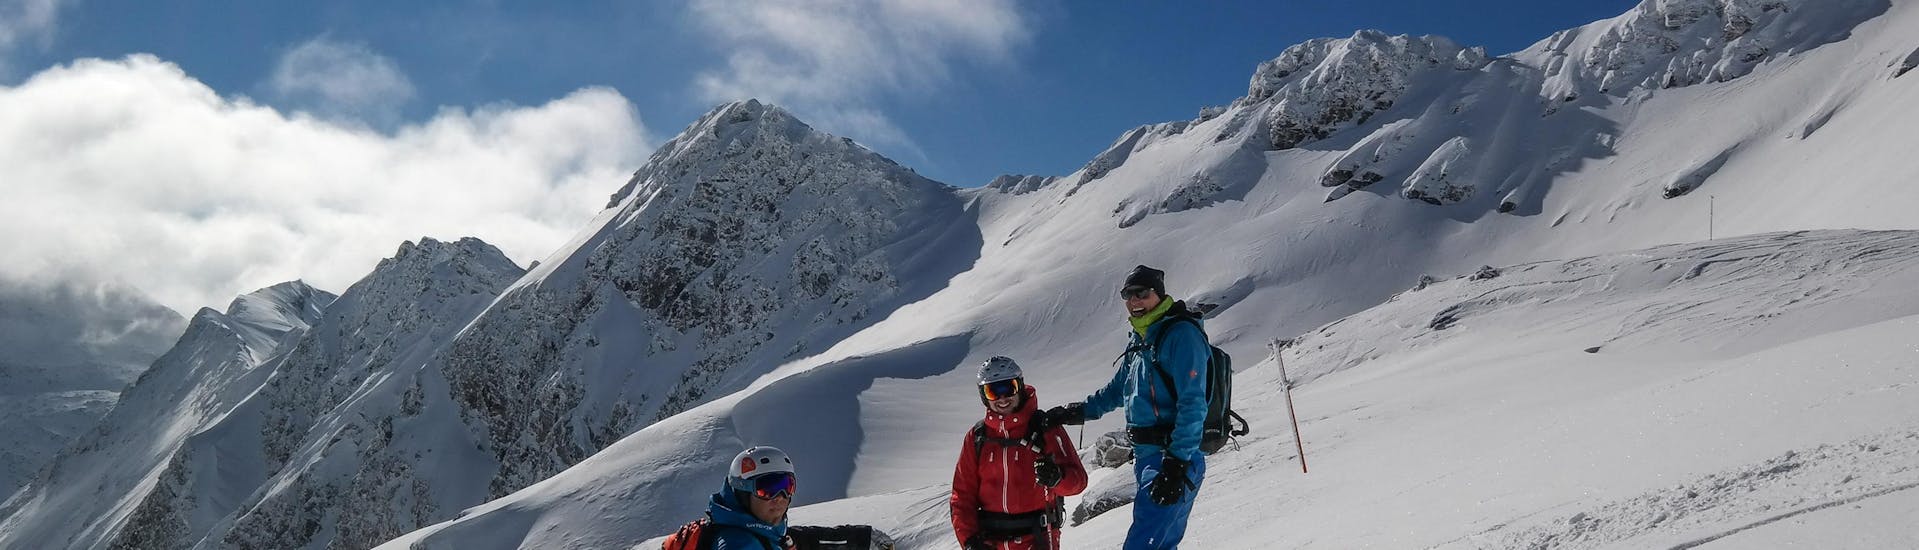 Private Skitour für alle Levels mit Skischule Snowsports Gastein.